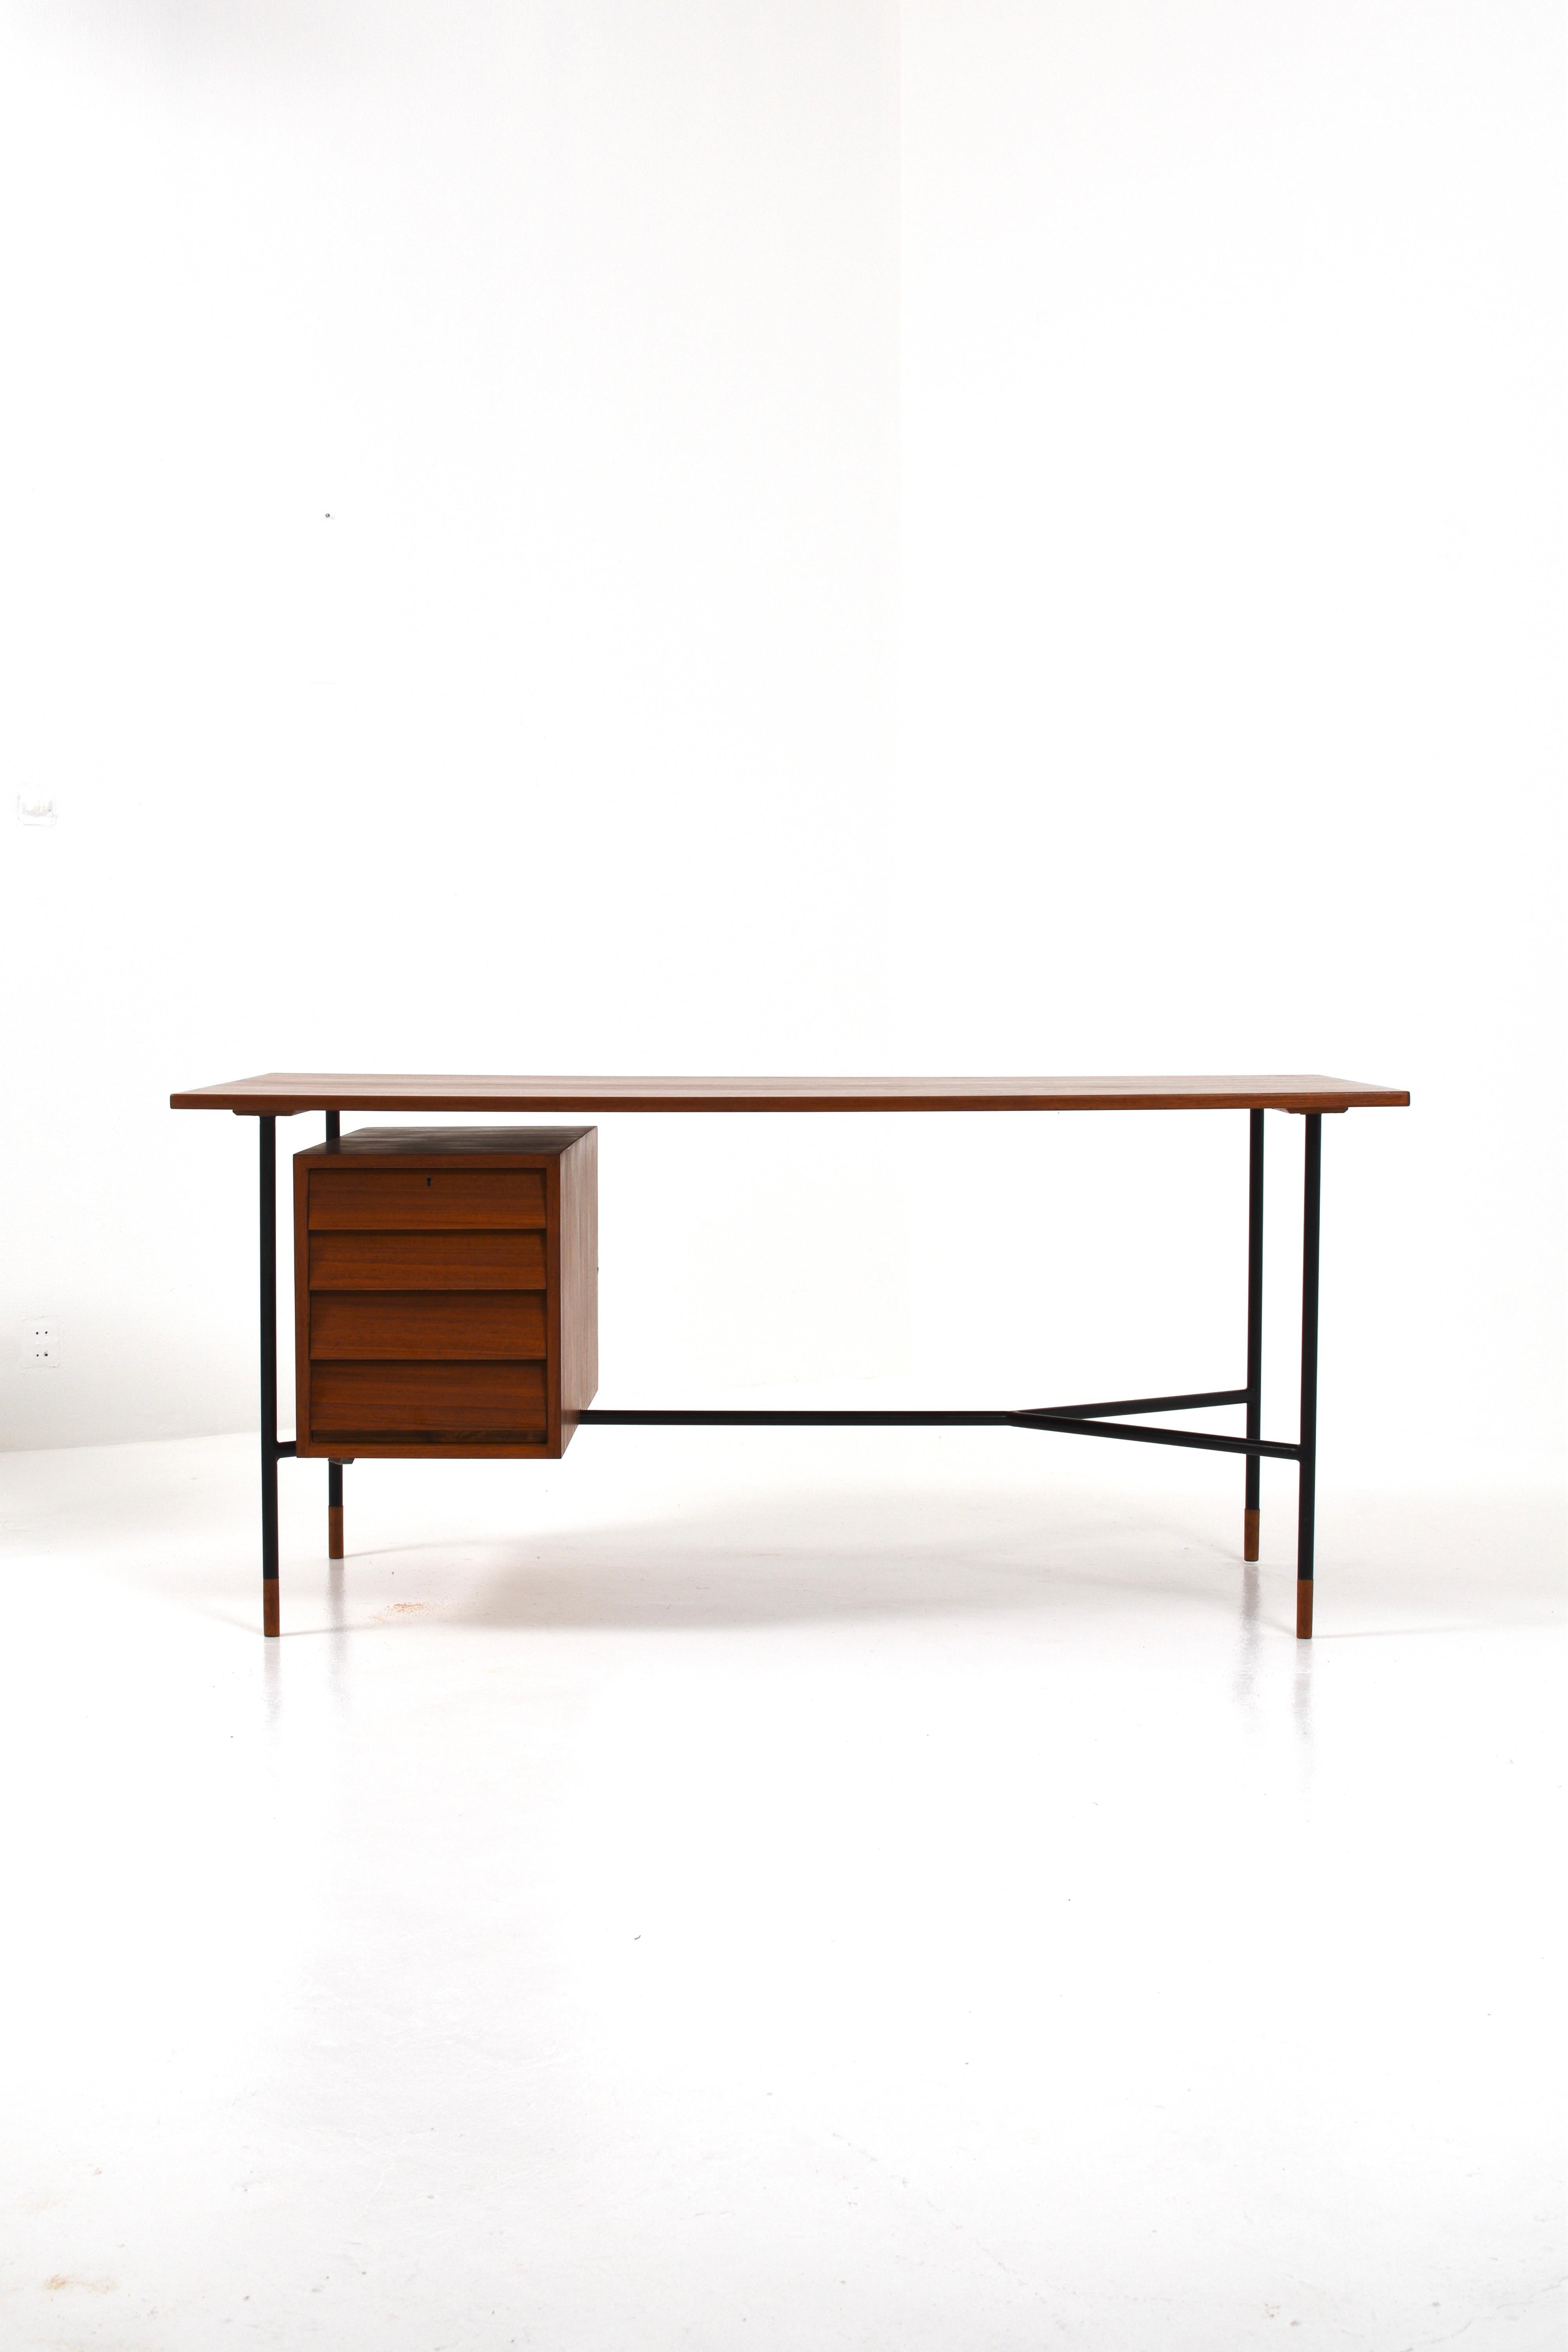 Sehr seltener Schreibtisch von Åke Hassbjer!

Im Laufe seiner Karriere hat Åke Hassbjer Modelle und Umgebungen für verschiedene Hersteller entworfen. Er hat mehrere Möbelstücke entworfen, unter anderem für DUX.

Bereits Mitte der 1950er Jahre